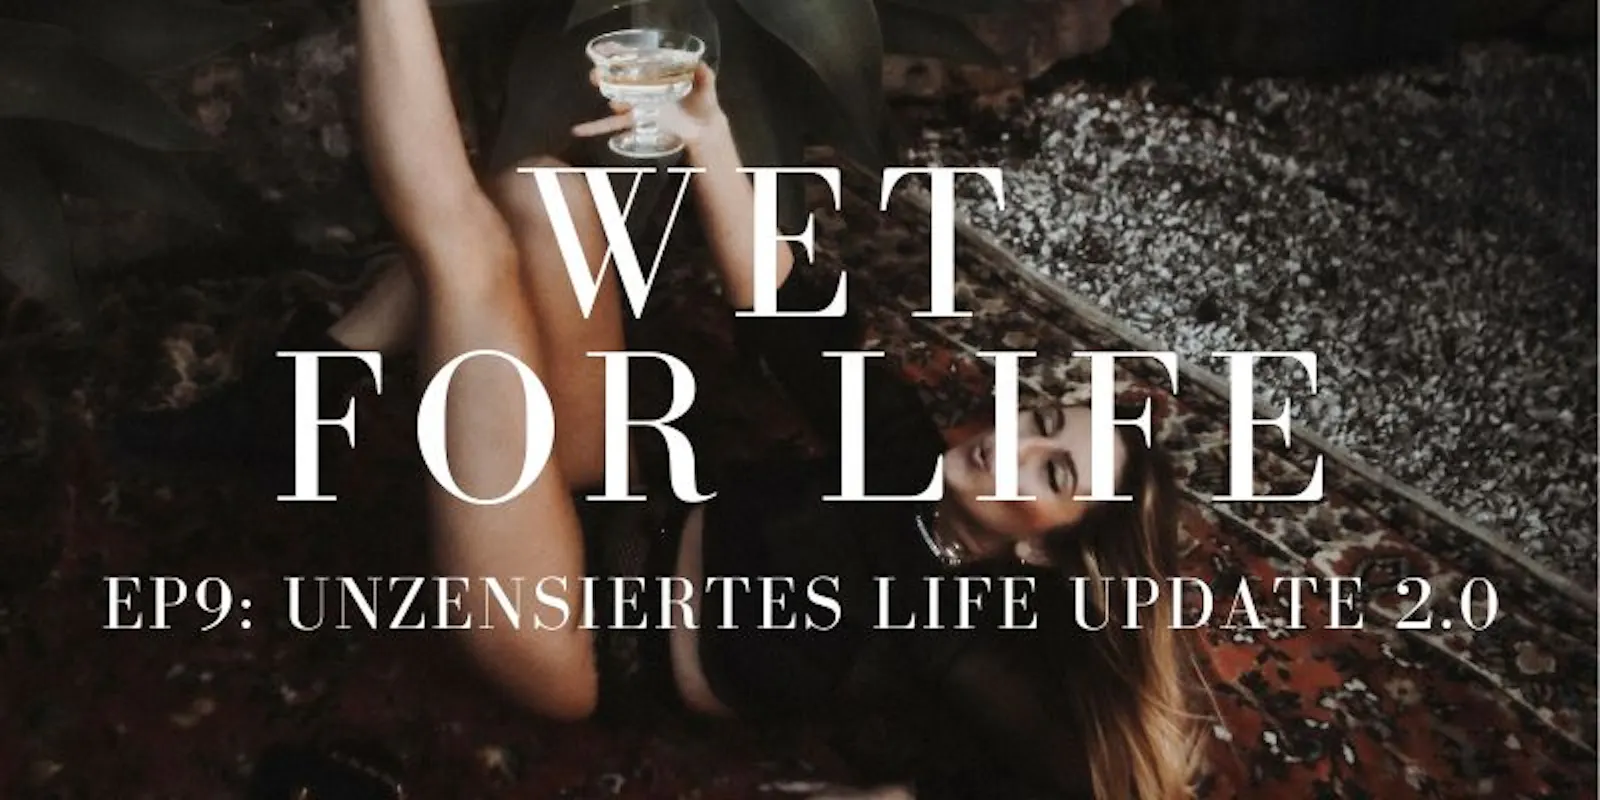 Elina Miller Podcast "Wet for Life" mit Folge 9 und einem unzensierten Life update